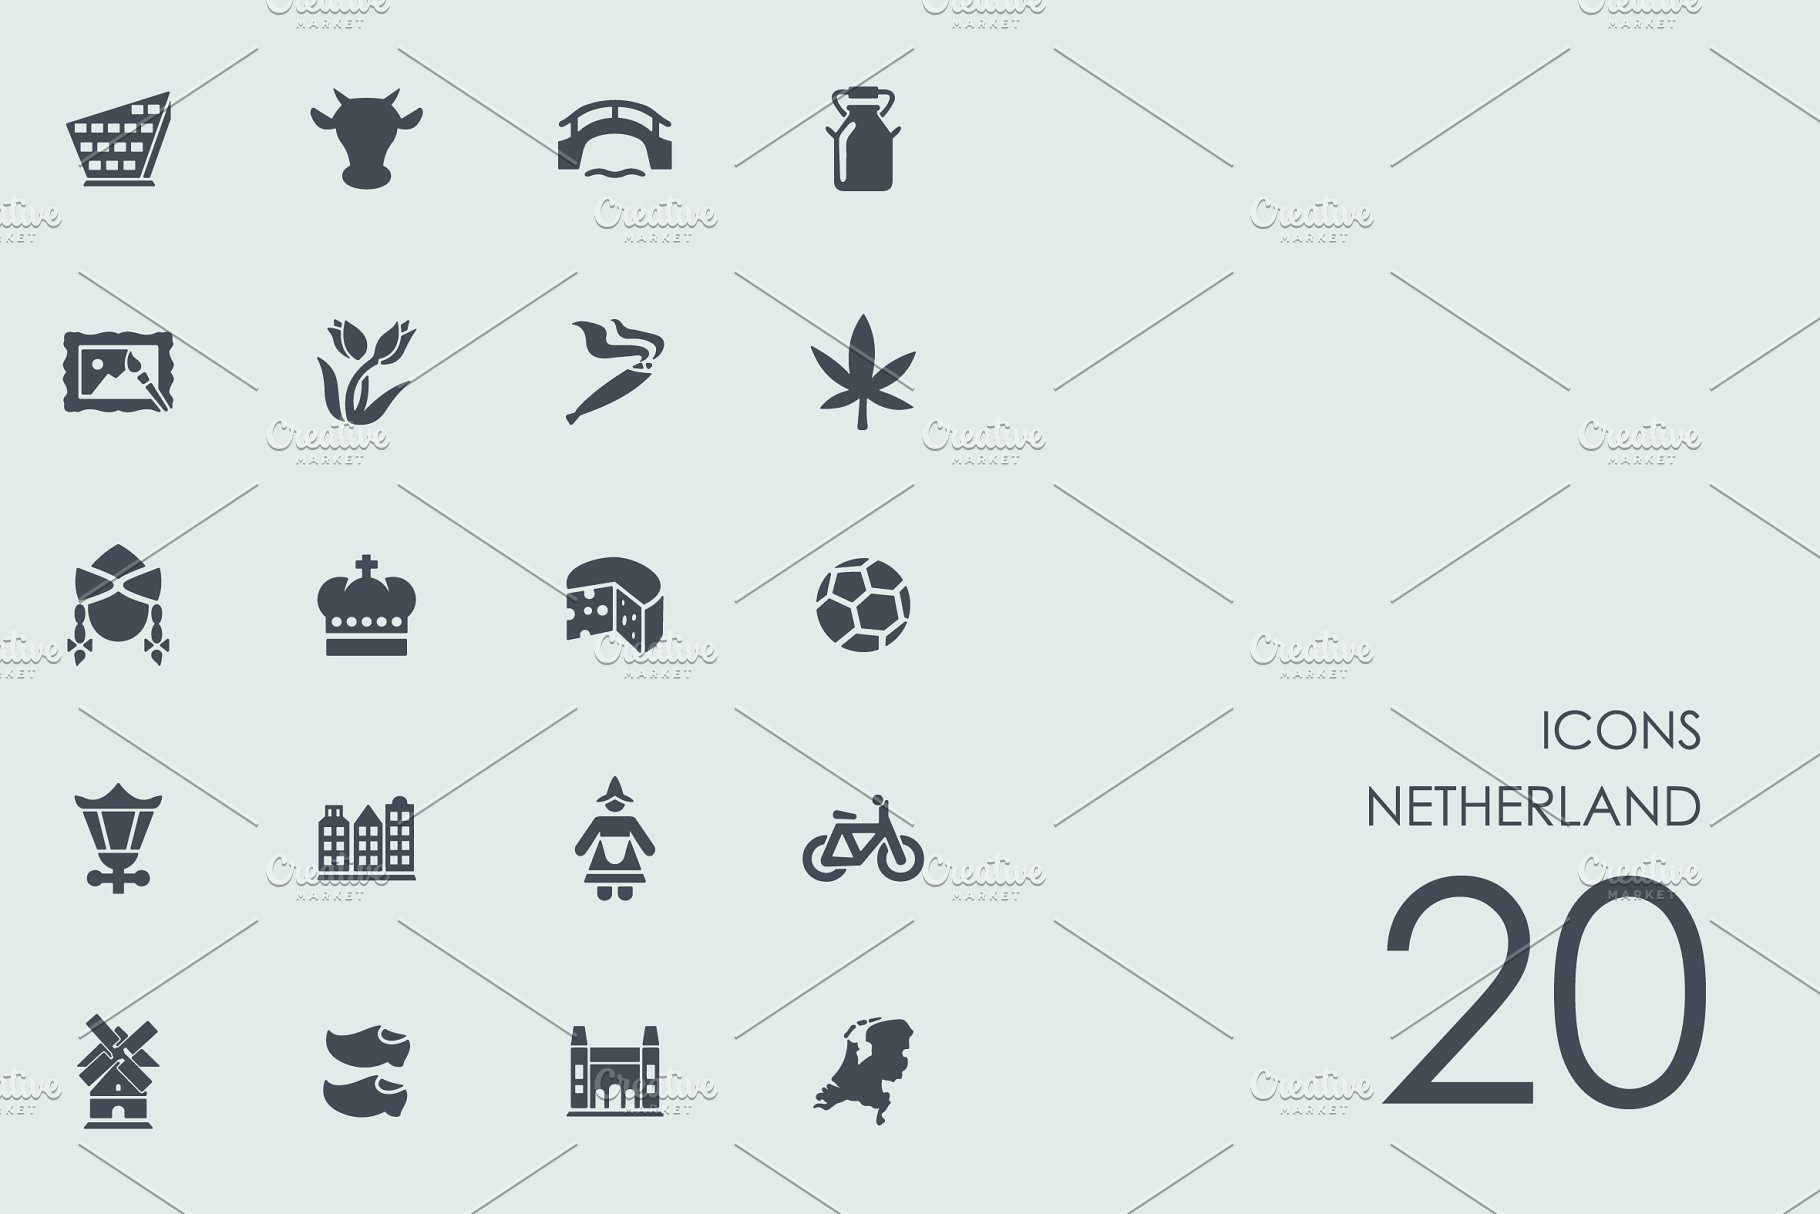 荷兰地标荷兰元素图标 Netherland icons